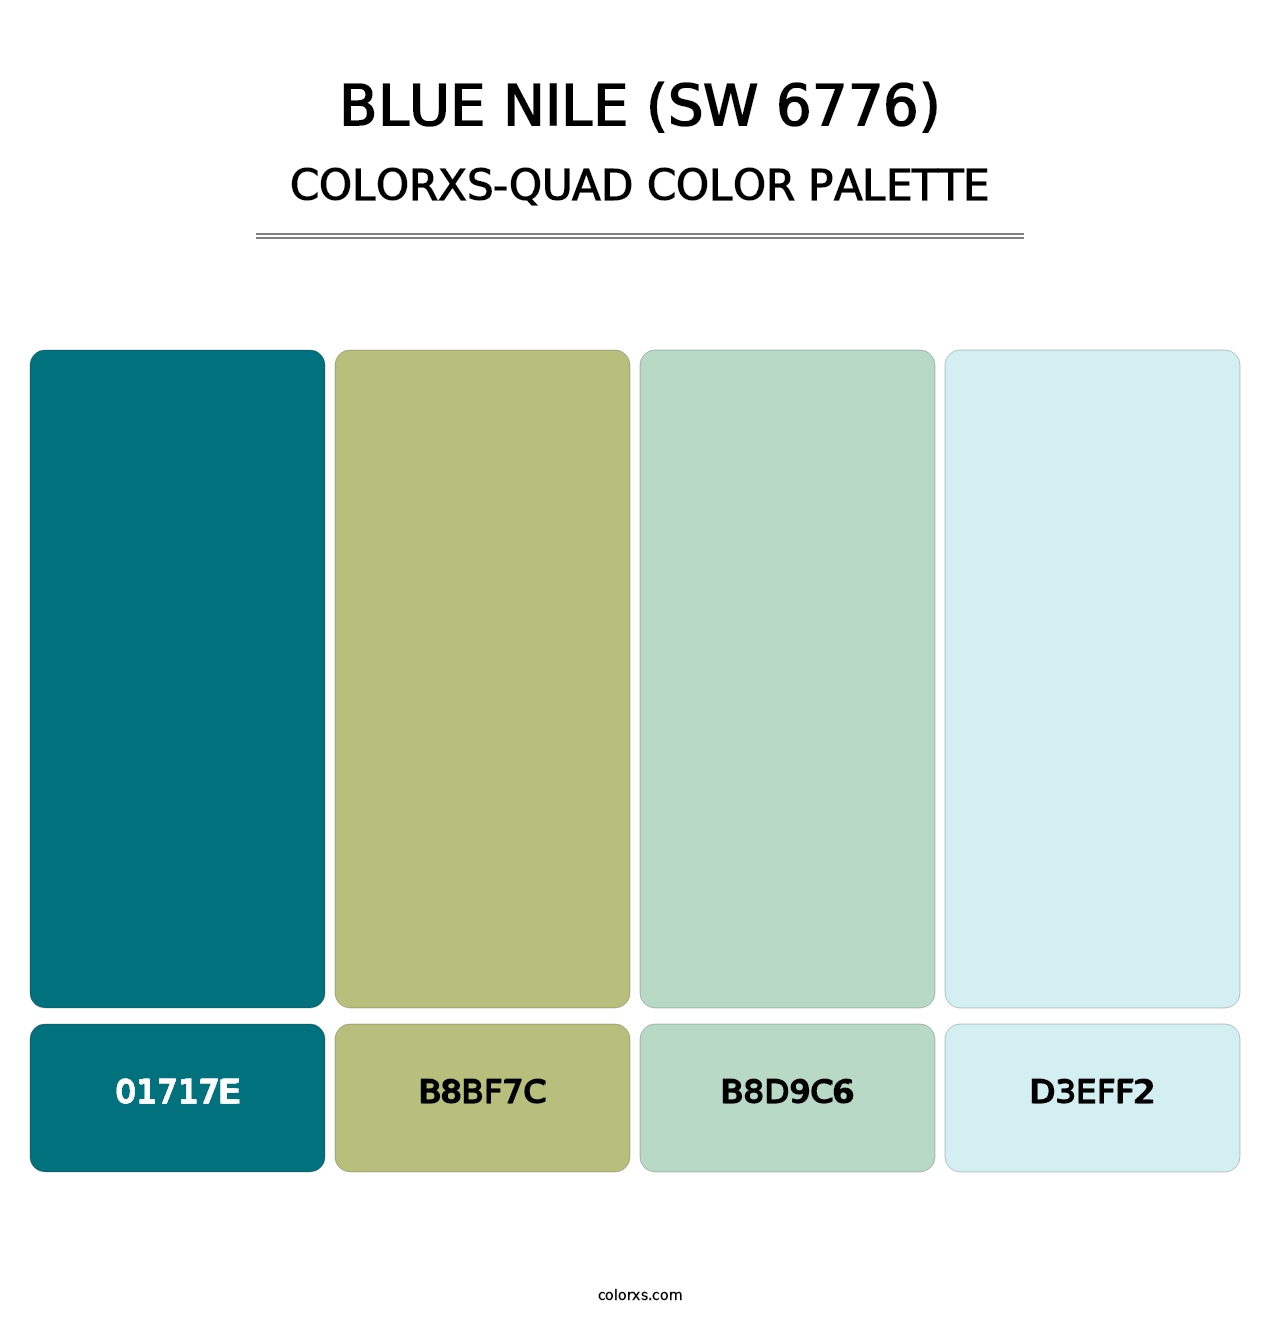 Blue Nile (SW 6776) - Colorxs Quad Palette